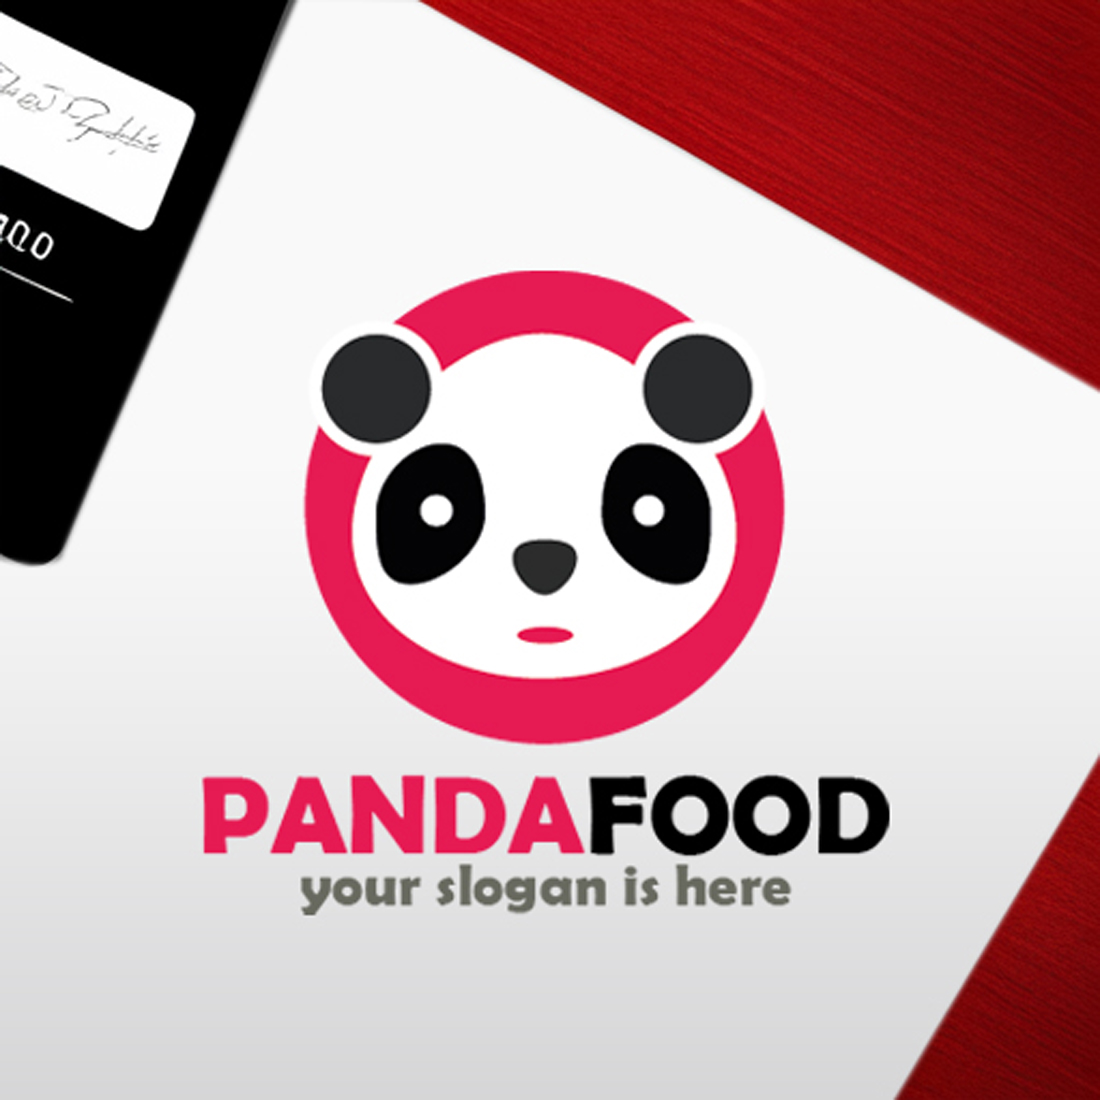 Food Panda Logo preview image.